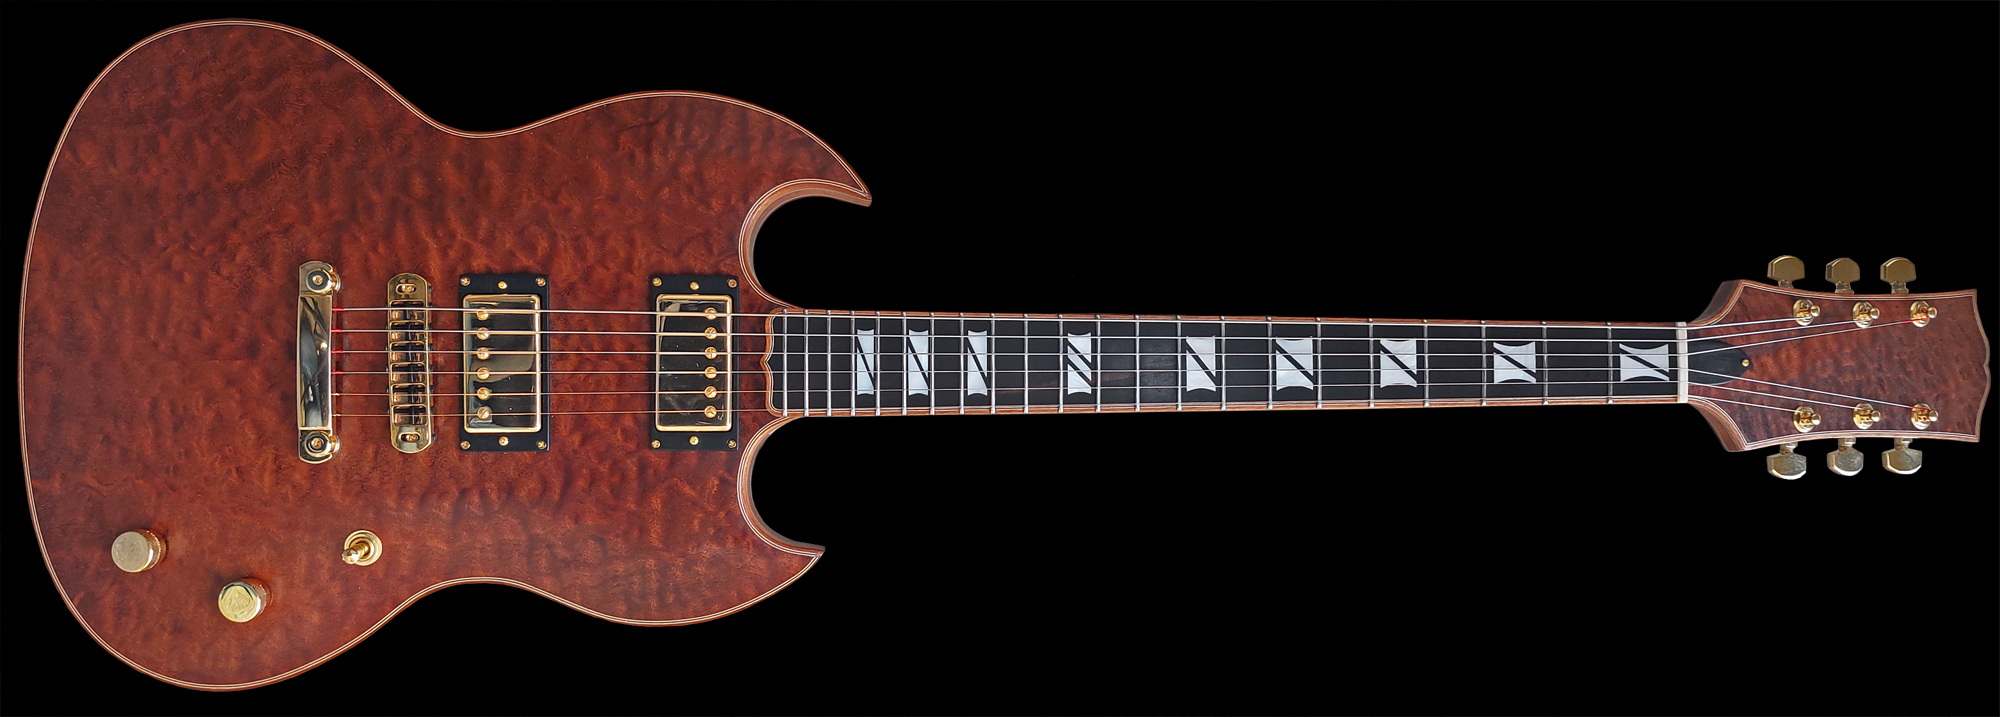 #115, SG model elektrische gitaar, gemaakt van gekruld mahonie hout, met gouden hardware en een ebben houten toets. Vooraanzicht.